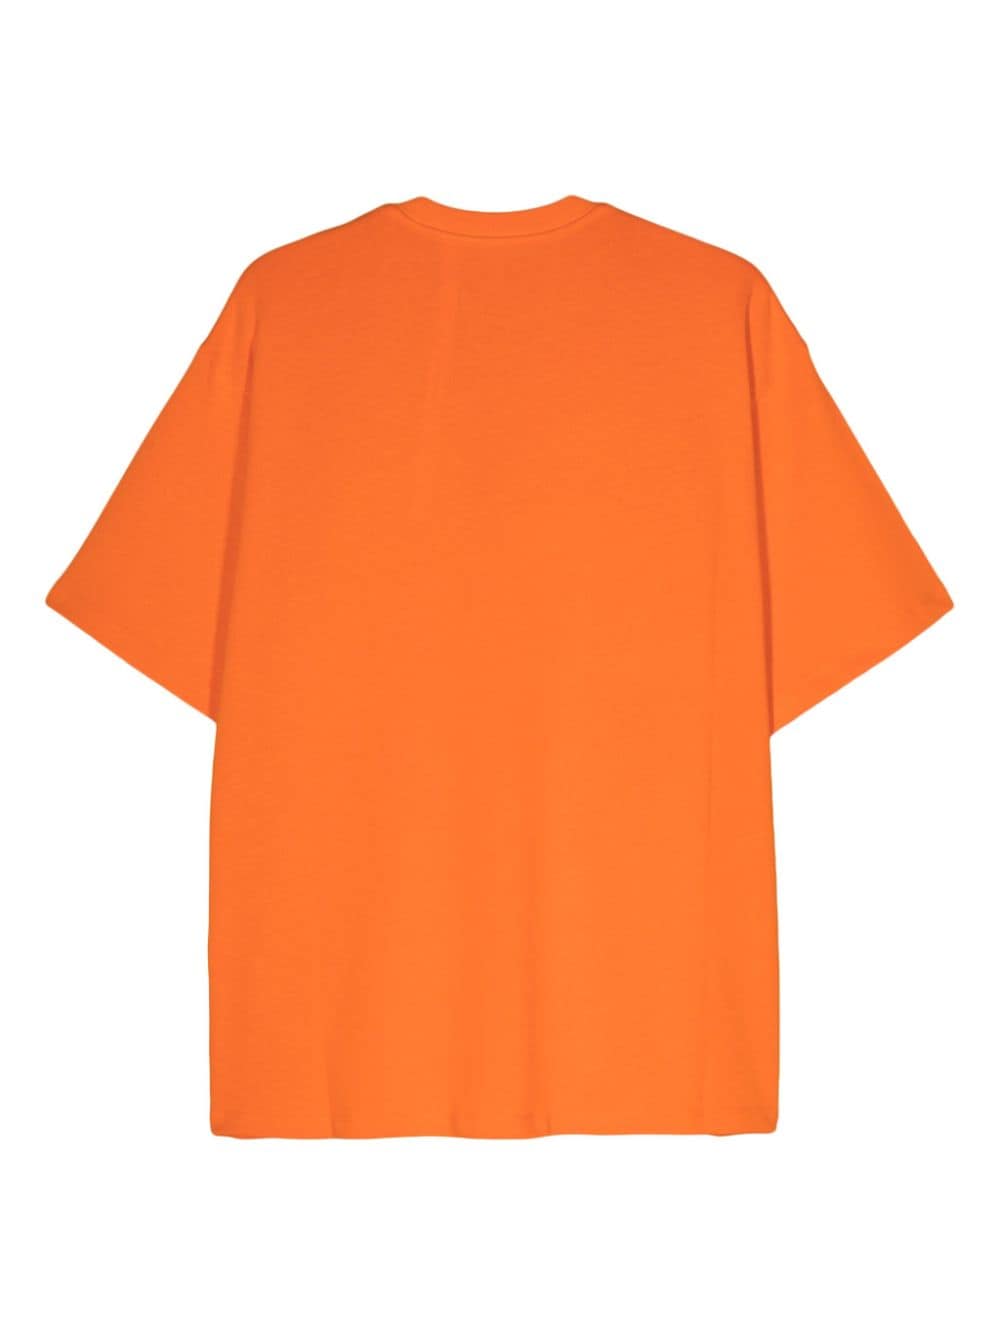 Orange front logo t-shirt